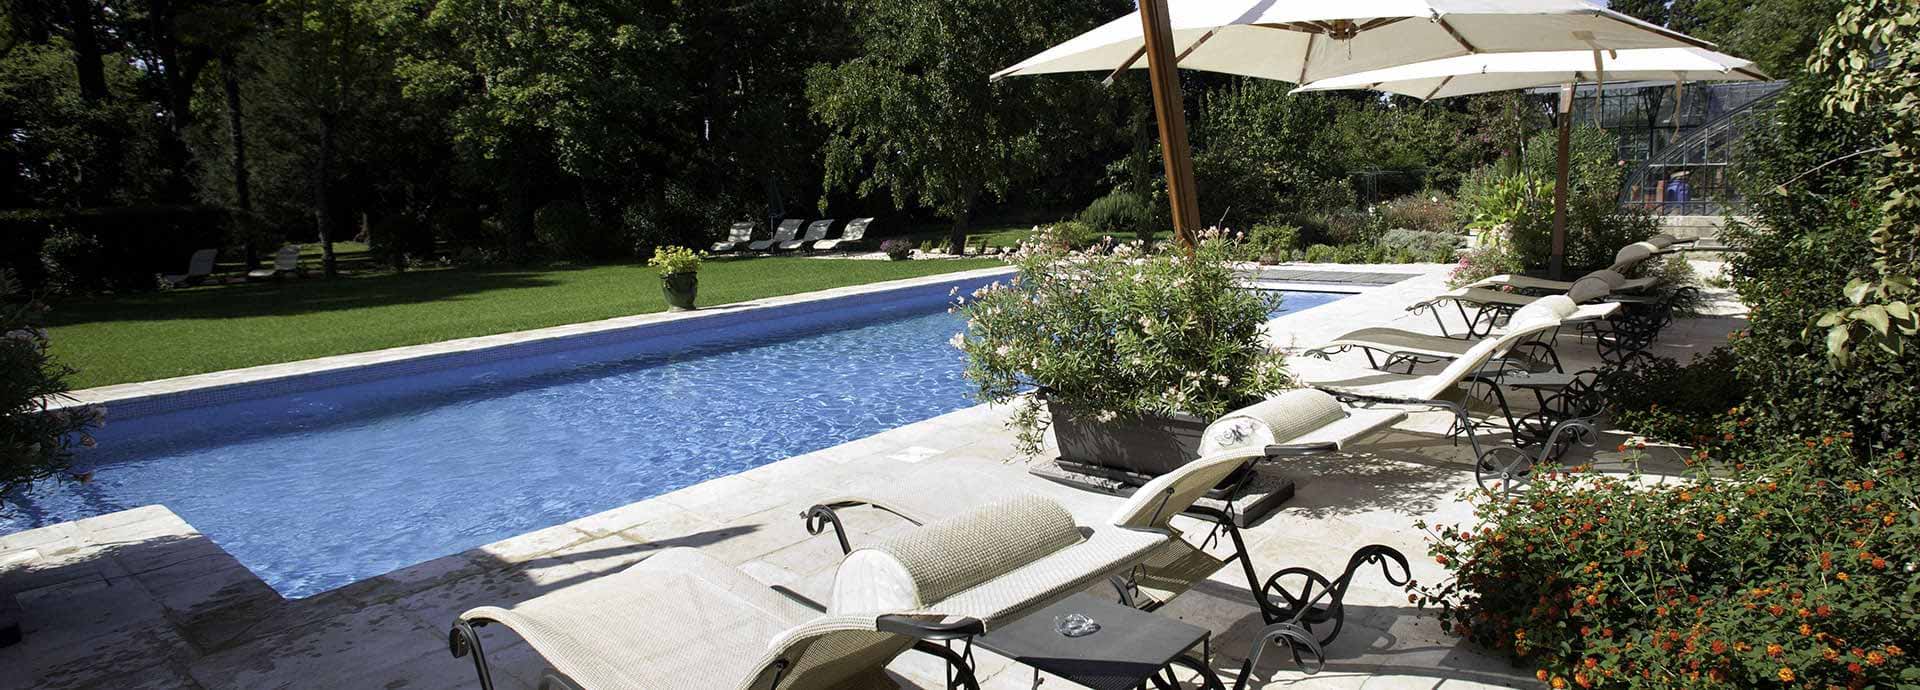 Zwembad (vrij toegankelijk) met privéterras en tuinset van Maison Silène, gastenverblijf op Domaine la Vernède